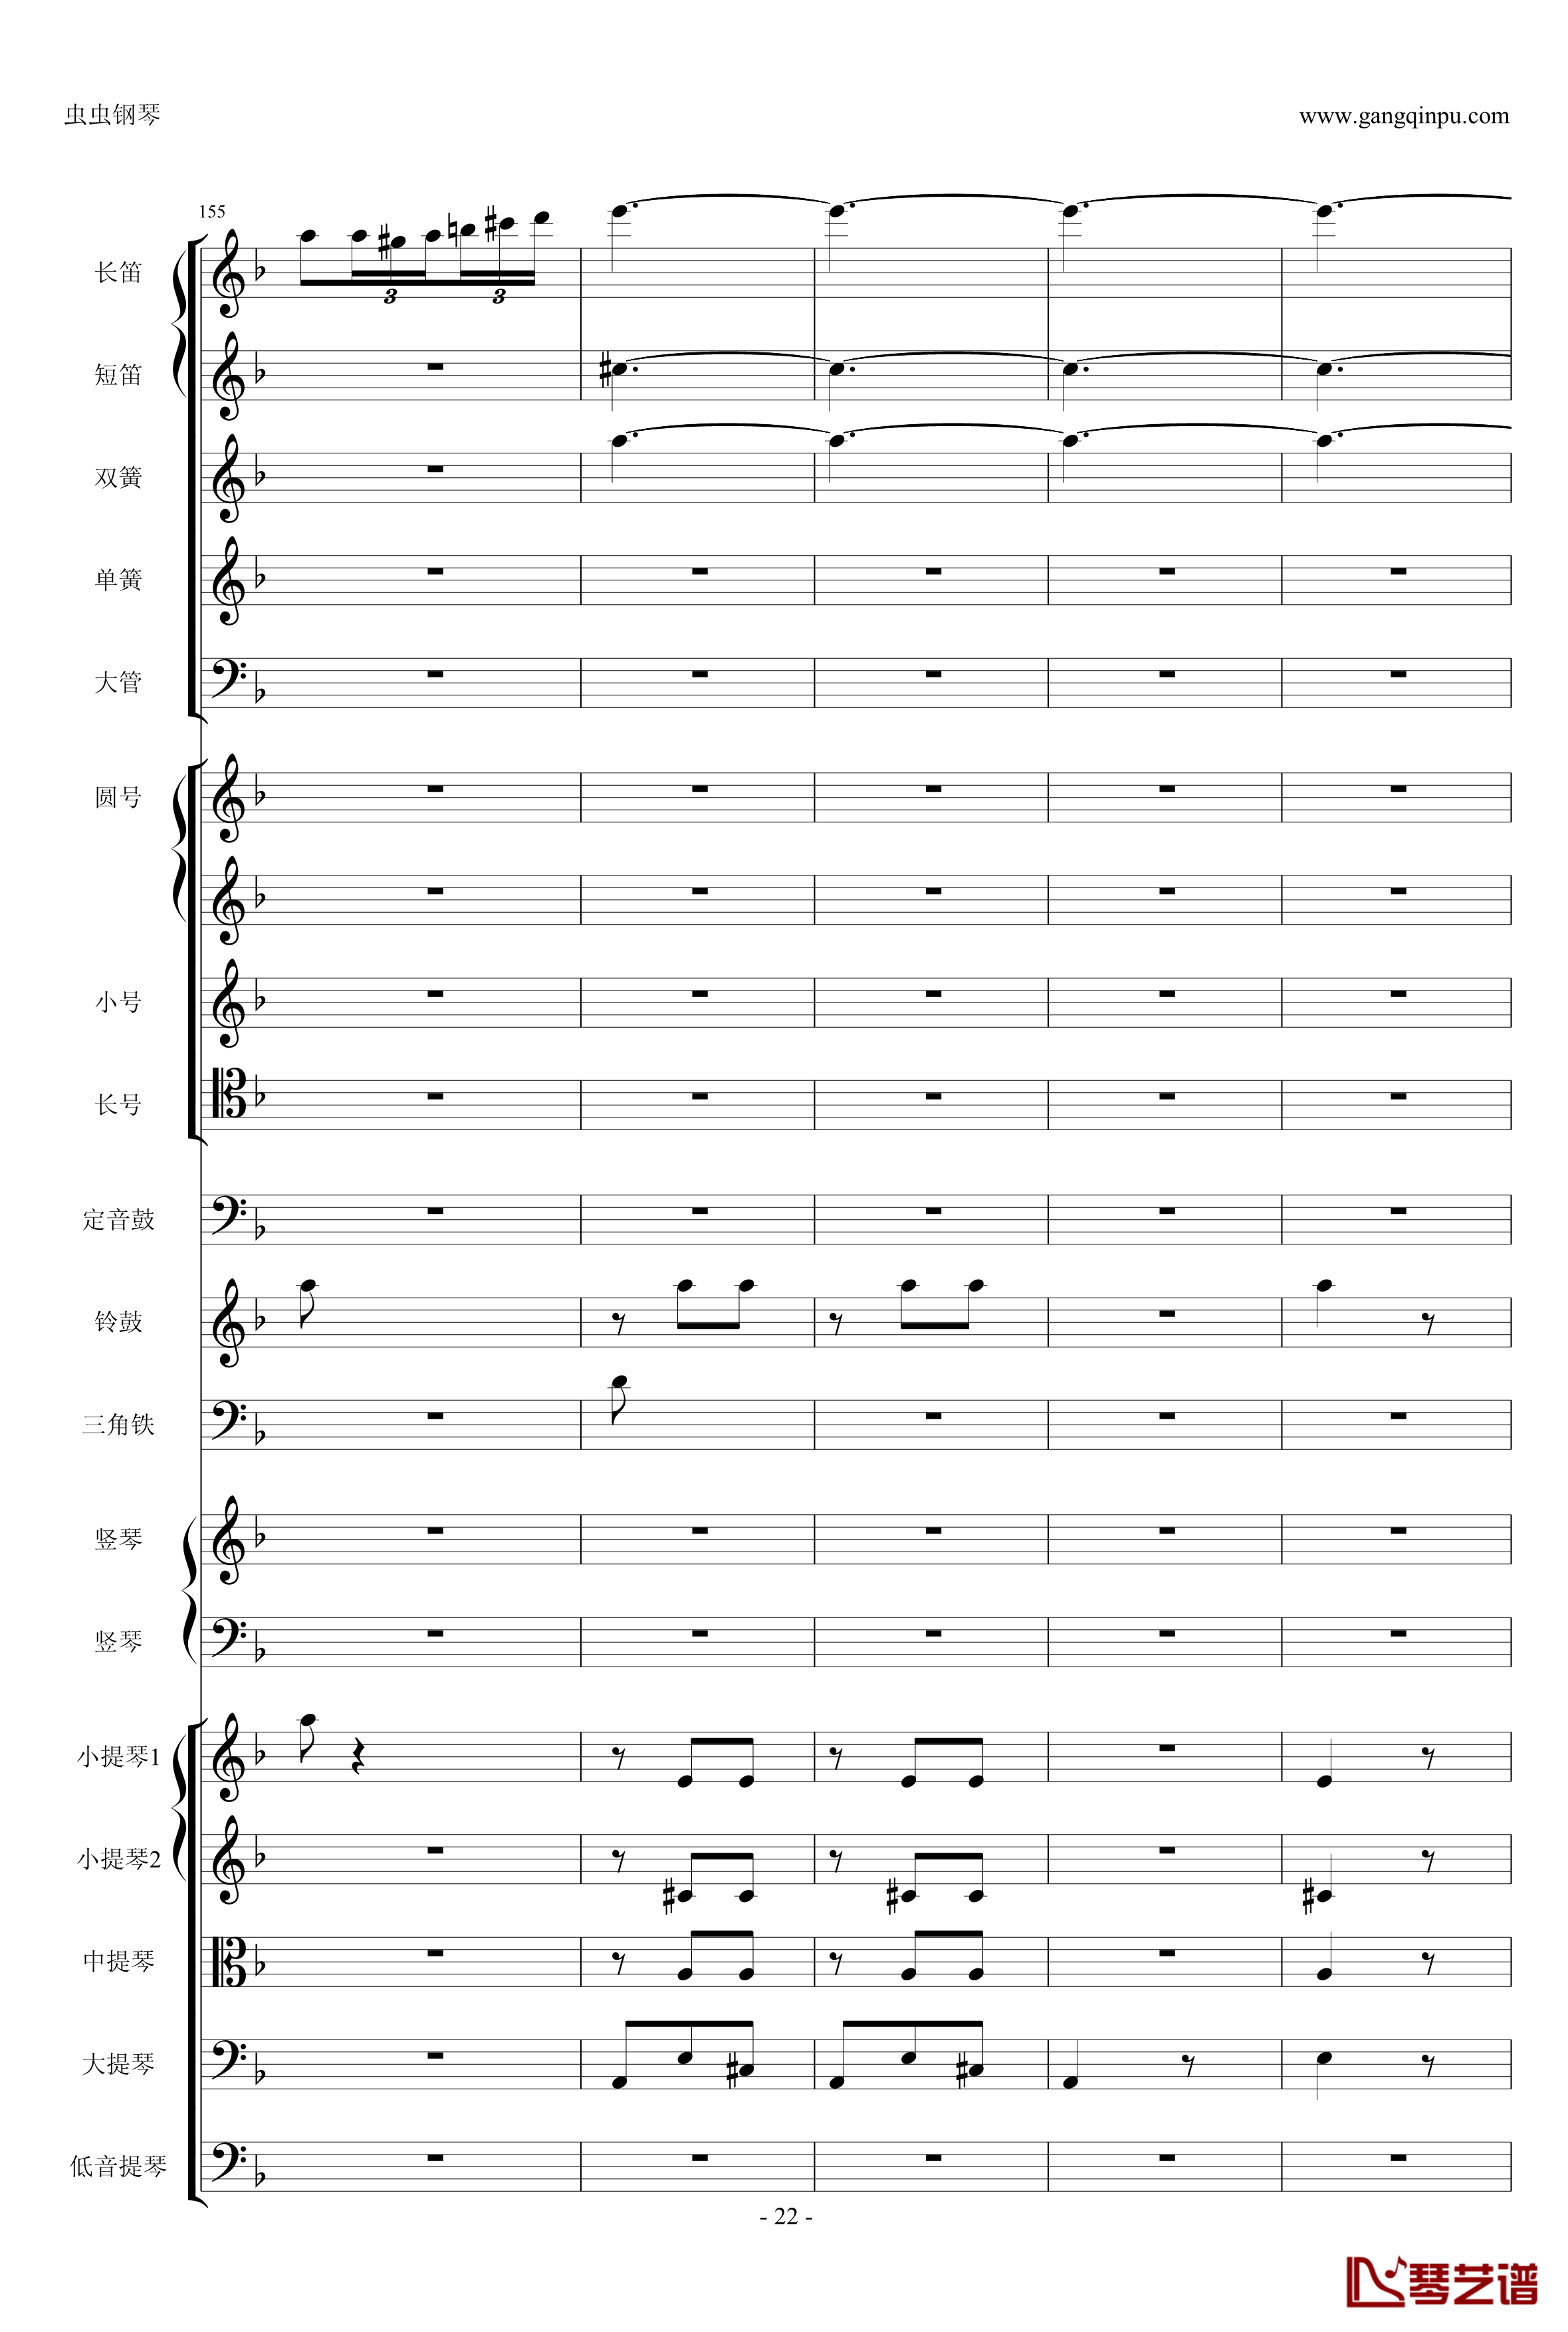 歌剧卡门选段钢琴谱-比才-Bizet- 第四幕间奏曲22